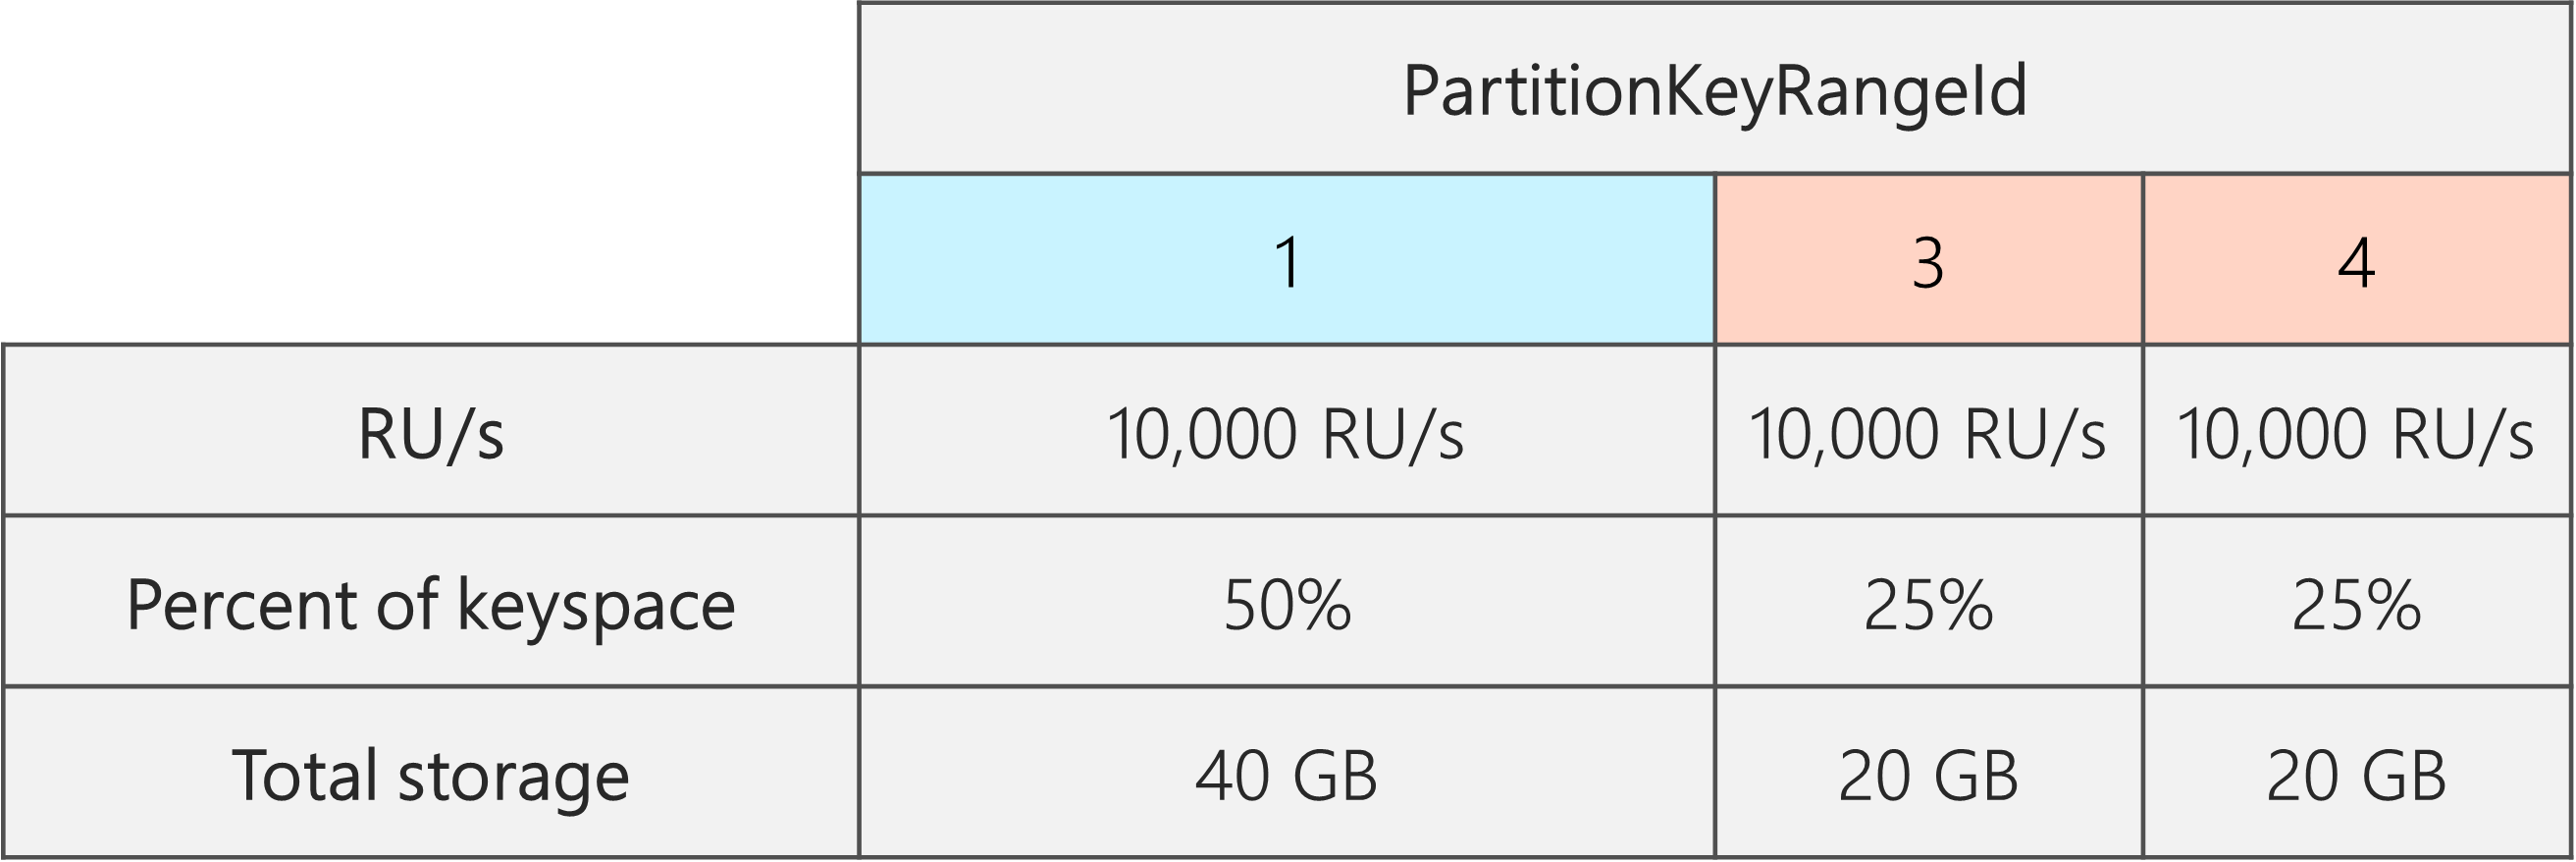 拆分后，有 3 个 PartitionKeyRangeId，每个具有 10,000 RU/秒。但是，其中一个 PartitionKeyRangeId 具有总键空间的 50% (40 GB)，而其中两个 PartitionKeyRangeId 具有总键空间的 25% (20 GB)